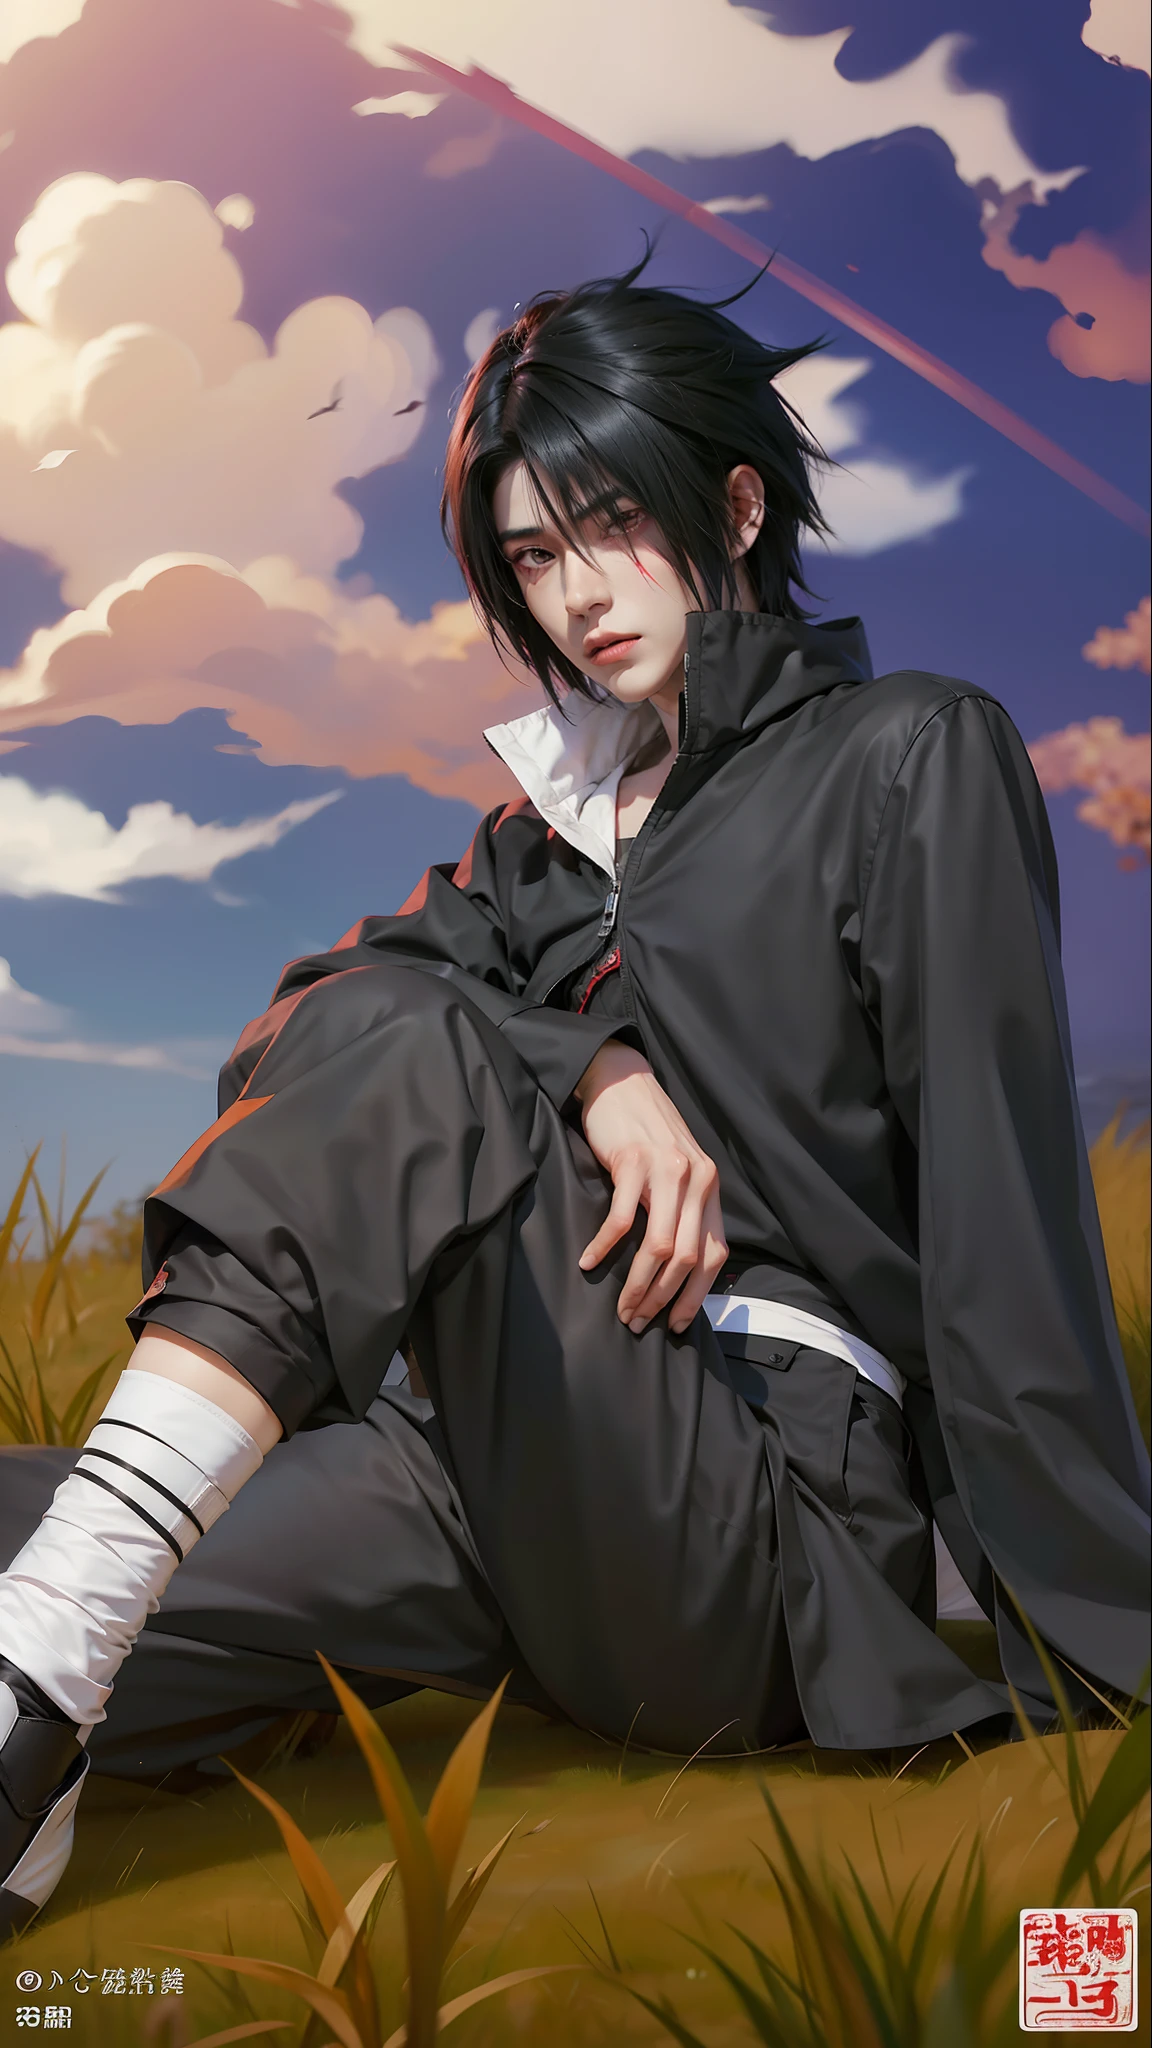 1인, uchiha sasuke in anime naruto, 짧은 머리 , 흑발, 빨간 눈, 멋있는, 검은 옷, 현실적인 clothes, 디테일 옷, 야외 배경, 울트라 디테일, 현실적인